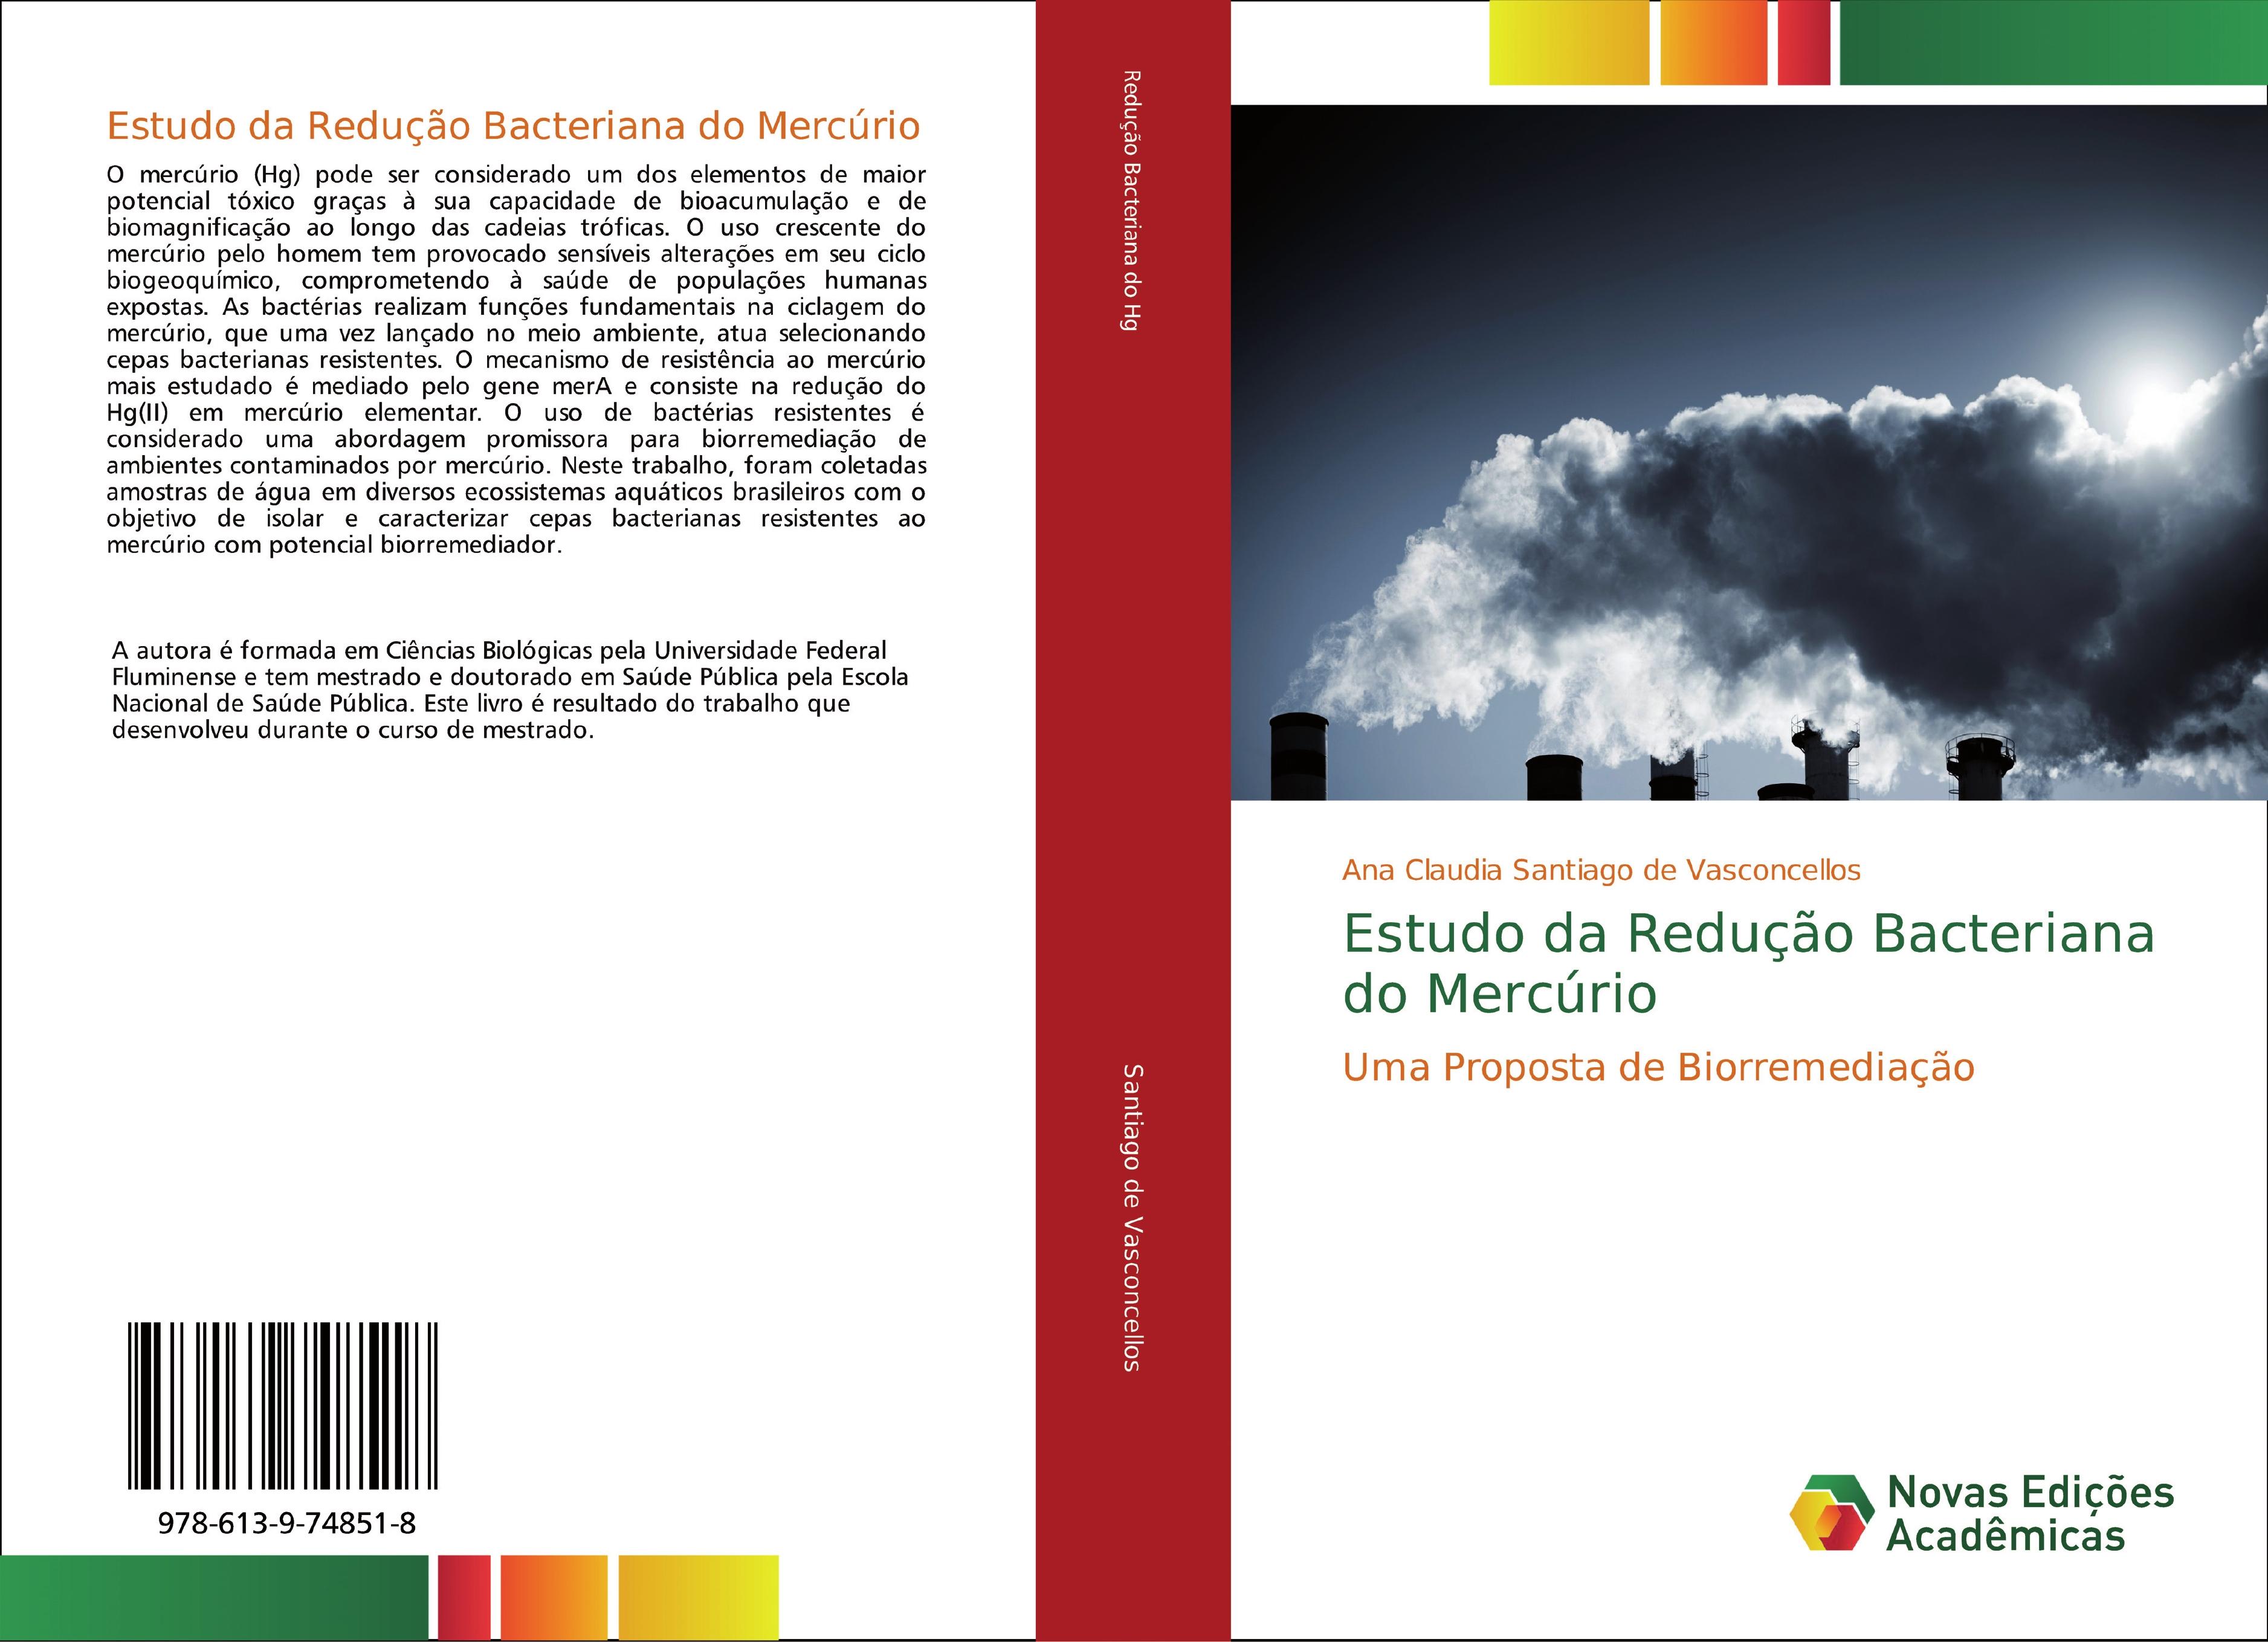 Estudo da Redução Bacteriana do Mercúrio - Ana Claudia Santiago de Vasconcellos